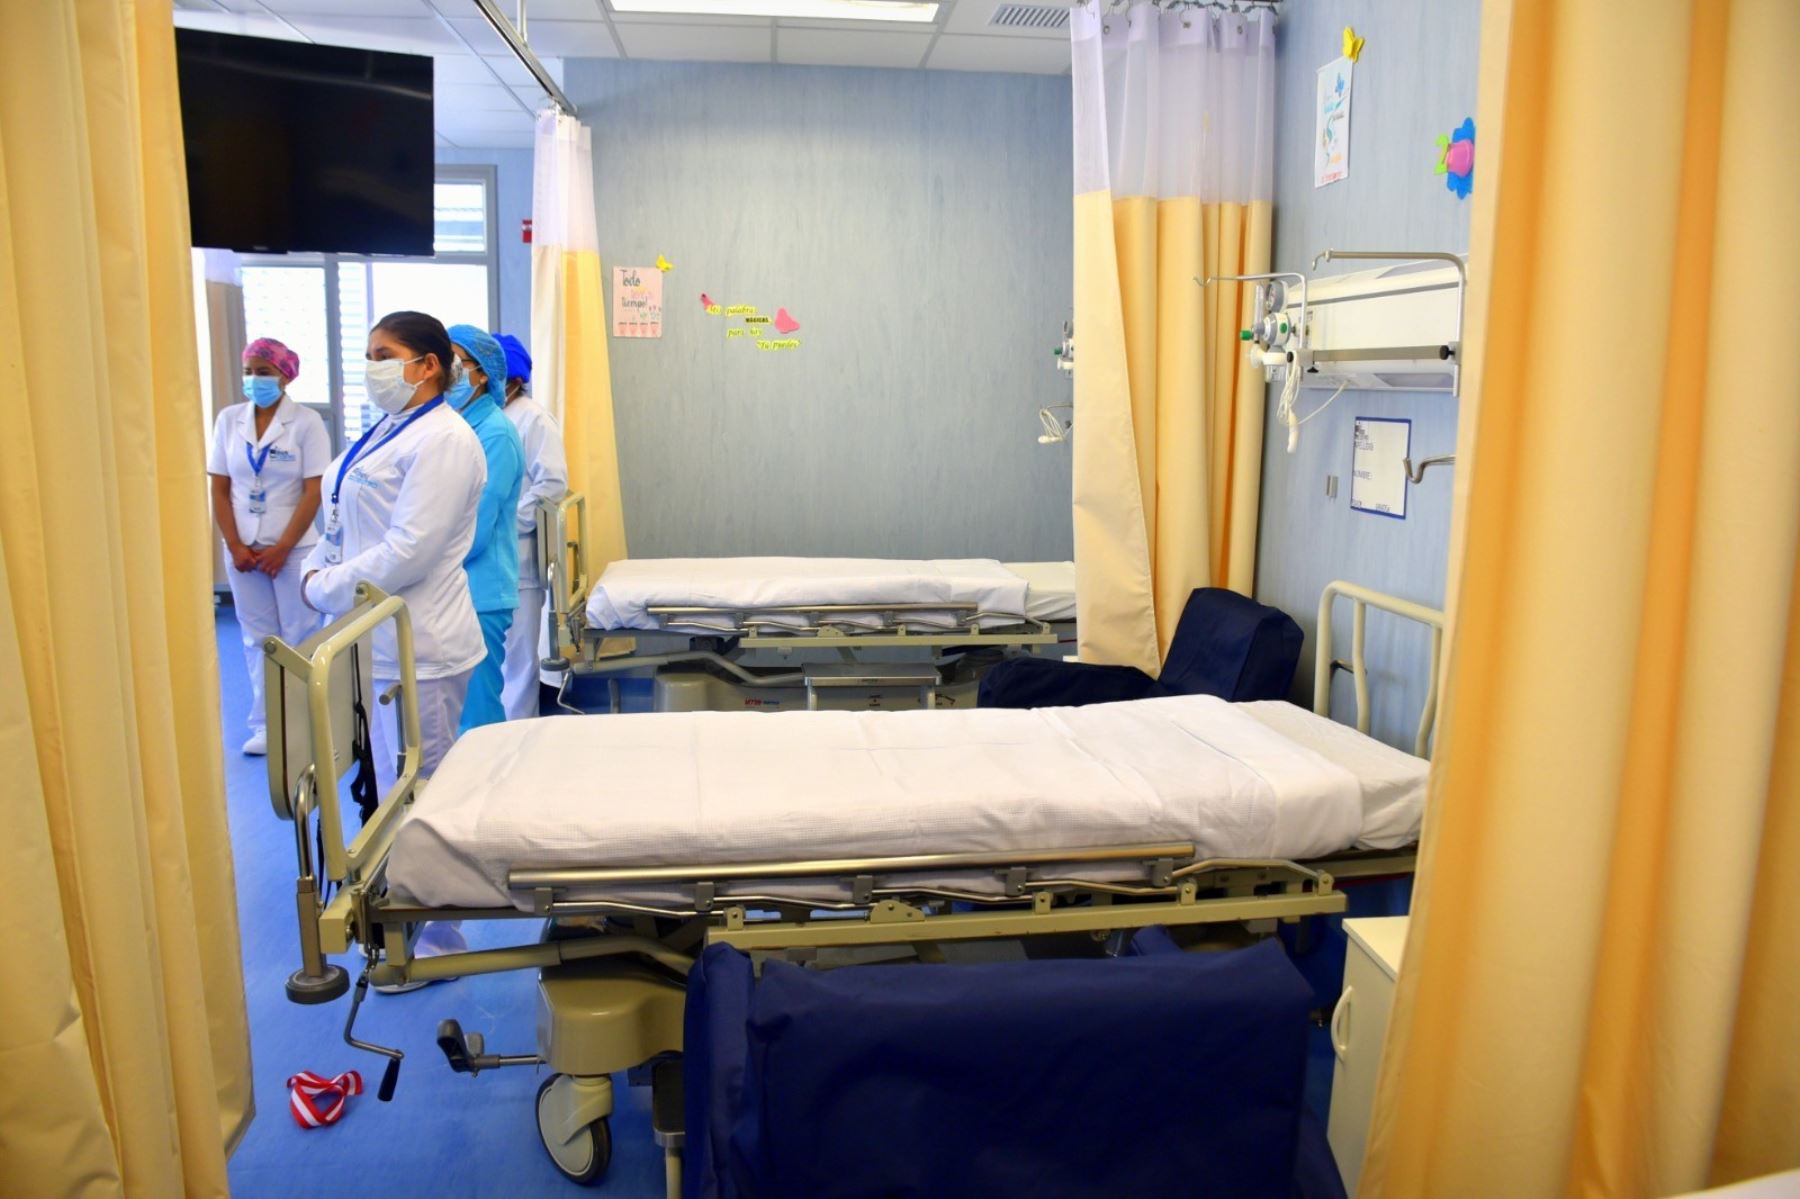 Con la implementación de nueve camas, el IREN Centro ampliará su servicio de hospitalización para atender a pacientes oncológicos. Foto: Pedro Tinoco